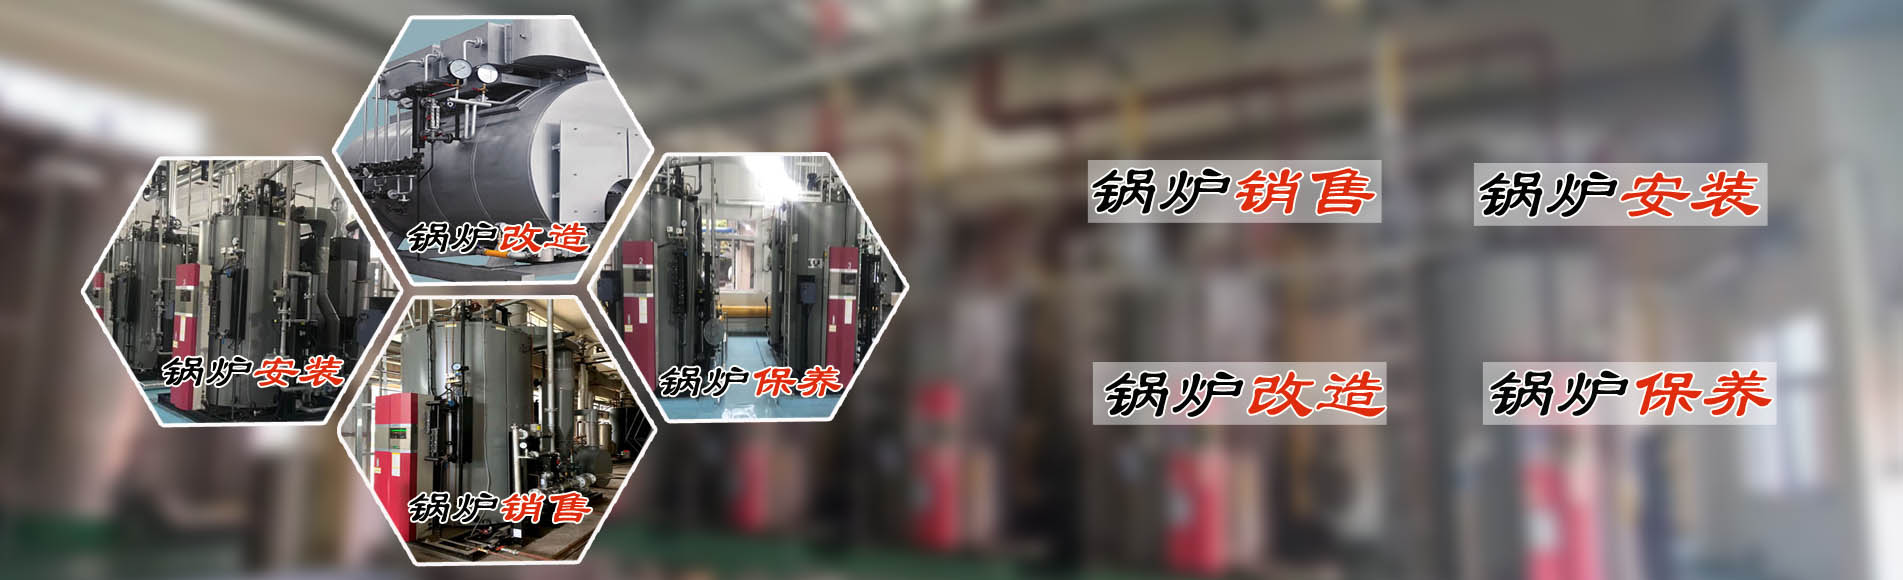 廣州希諾機電提供蒸汽節能鍋爐、熱水鍋爐安裝銷售、鍋爐改造、鍋爐維護保養服務。